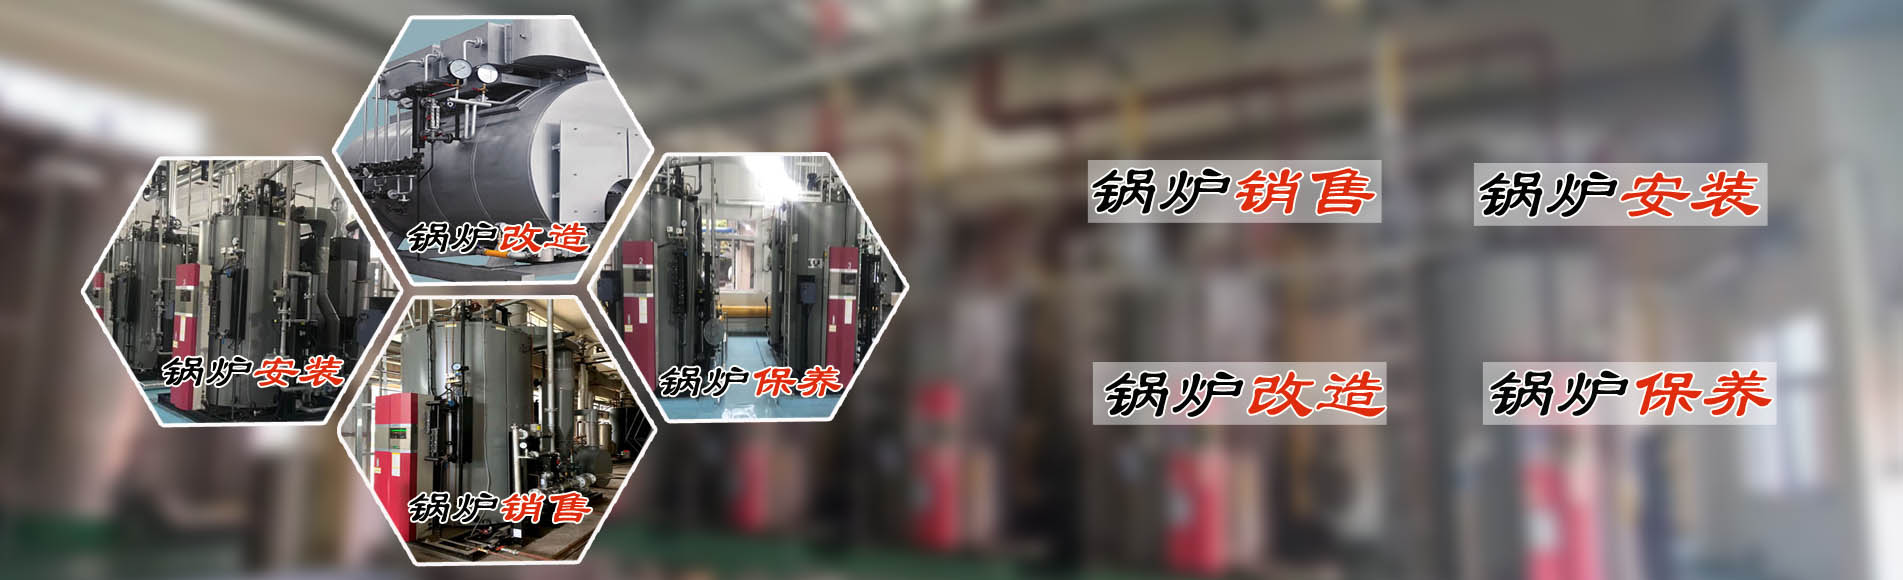 廣州希諾機電提供蒸汽節能鍋爐、熱水鍋爐安裝銷售、鍋爐改造、鍋爐維護保養服務。